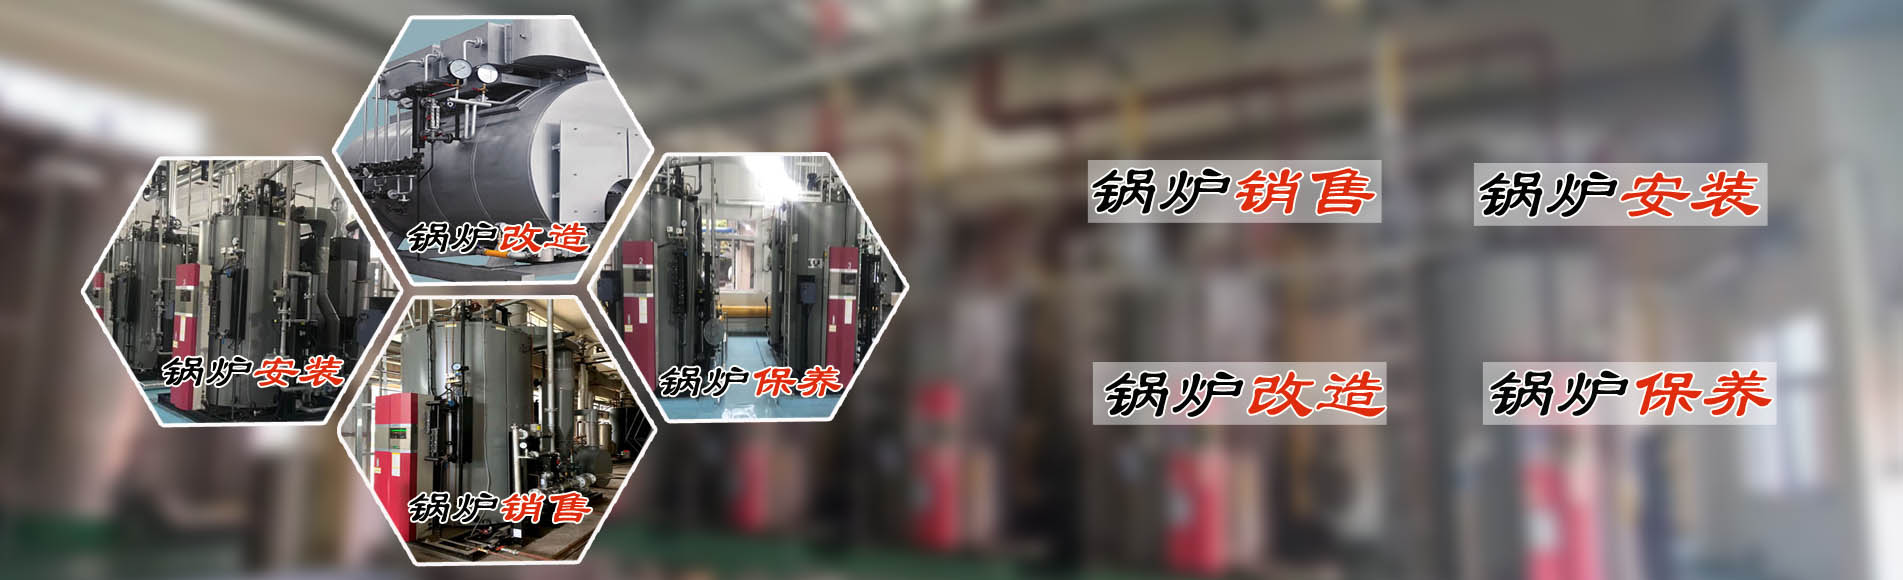 廣州希諾機電提供蒸汽節能鍋爐、熱水鍋爐安裝銷售、鍋爐改造、鍋爐維護保養服務。